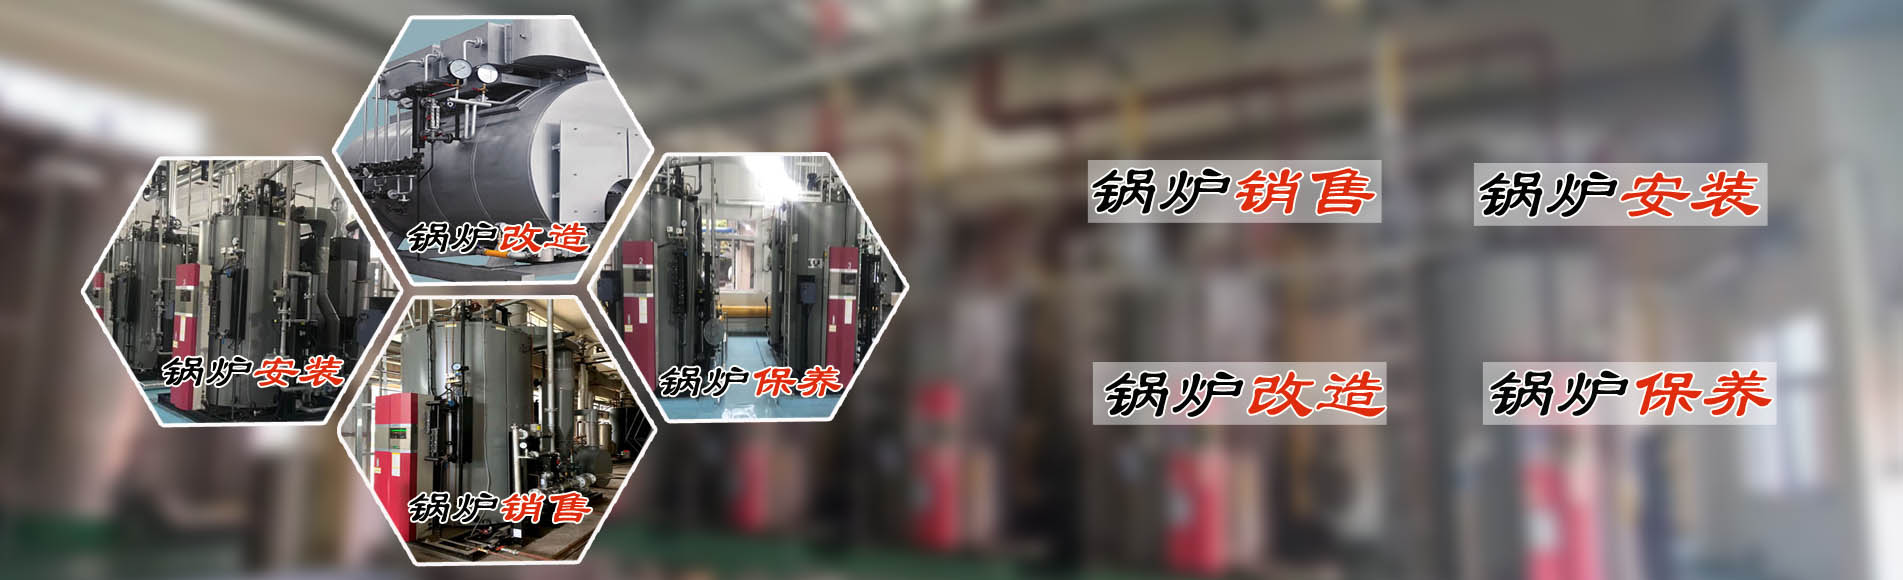 廣州希諾機電提供蒸汽節能鍋爐、熱水鍋爐安裝銷售、鍋爐改造、鍋爐維護保養服務。